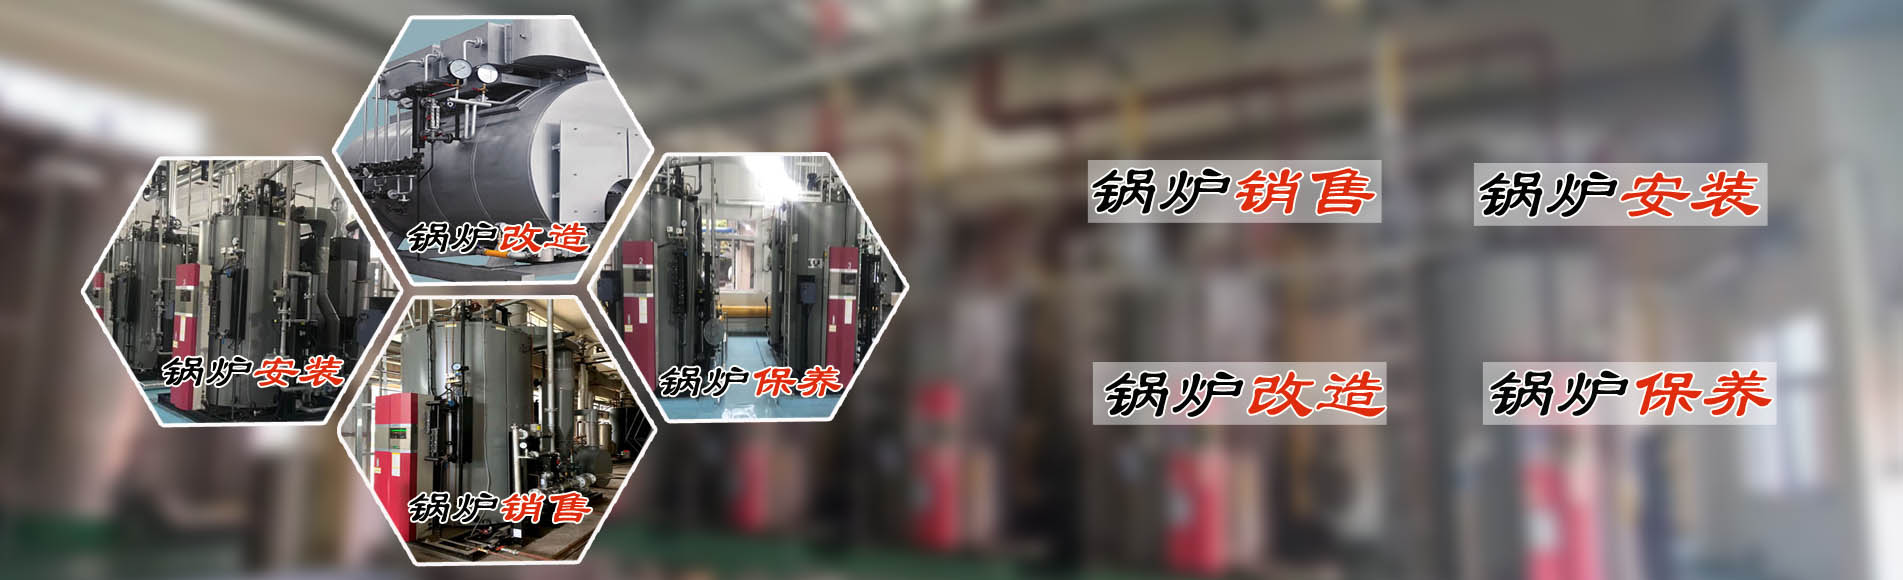 廣州希諾機電提供蒸汽節能鍋爐、熱水鍋爐安裝銷售、鍋爐改造、鍋爐維護保養服務。